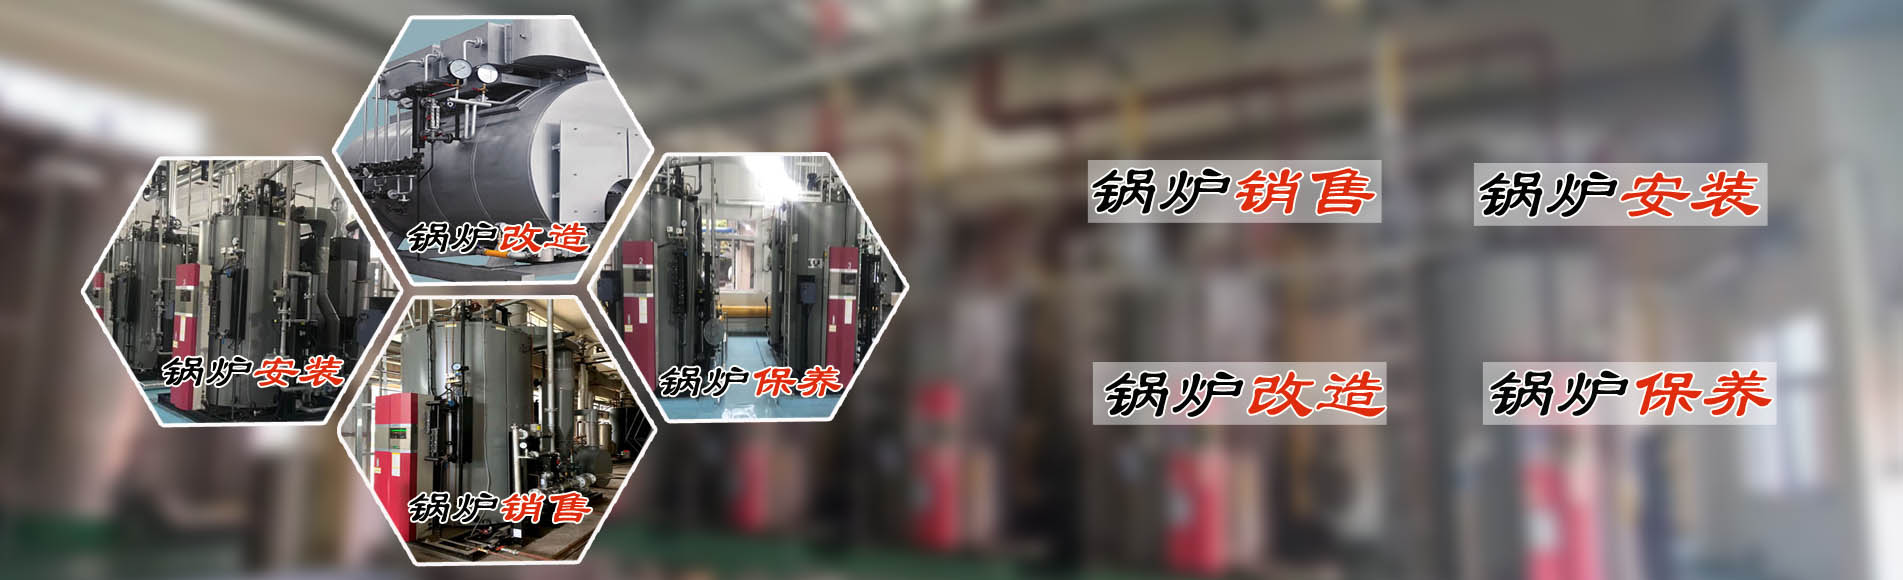 廣州希諾機電提供蒸汽節能鍋爐、熱水鍋爐安裝銷售、鍋爐改造、鍋爐維護保養服務。